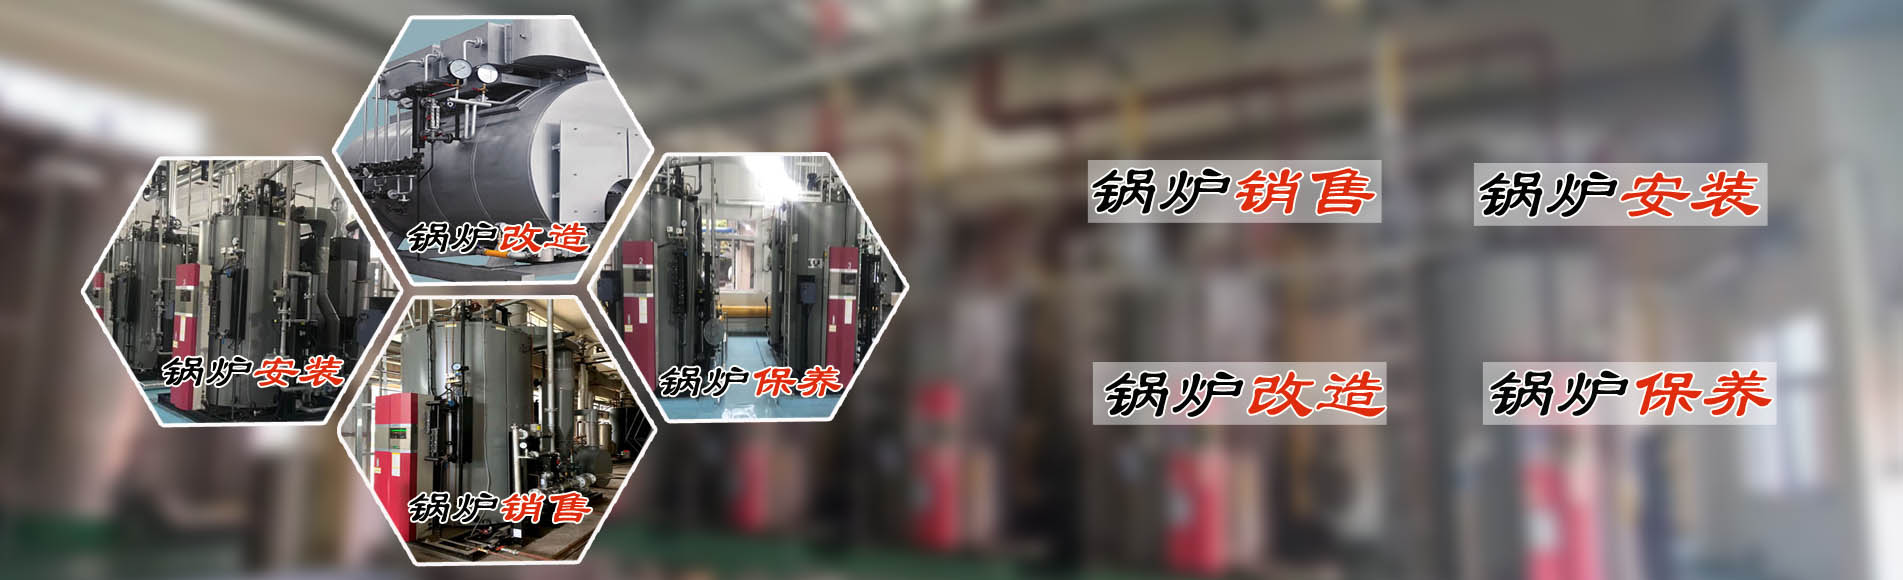 廣州希諾機電提供蒸汽節能鍋爐、熱水鍋爐安裝銷售、鍋爐改造、鍋爐維護保養服務。